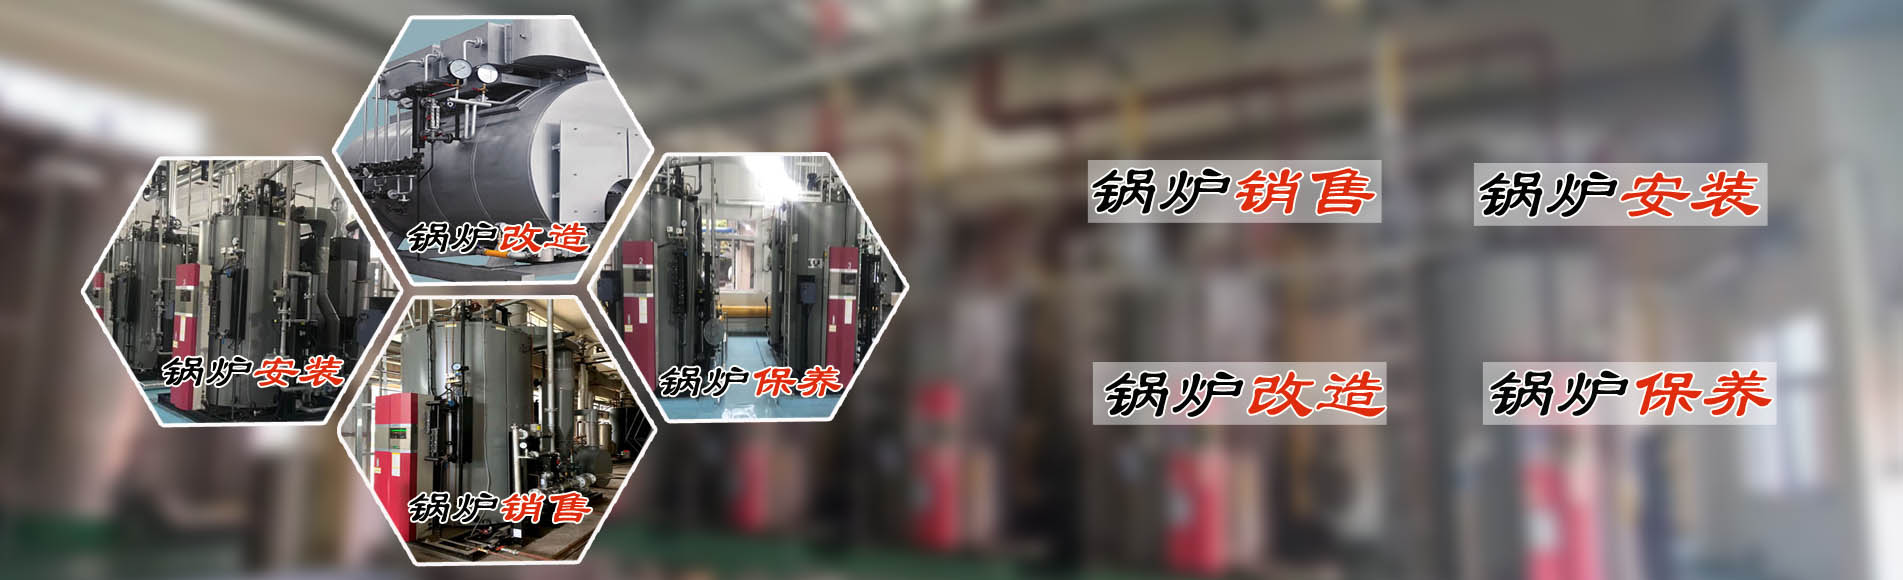 廣州希諾機電提供蒸汽節能鍋爐、熱水鍋爐安裝銷售、鍋爐改造、鍋爐維護保養服務。